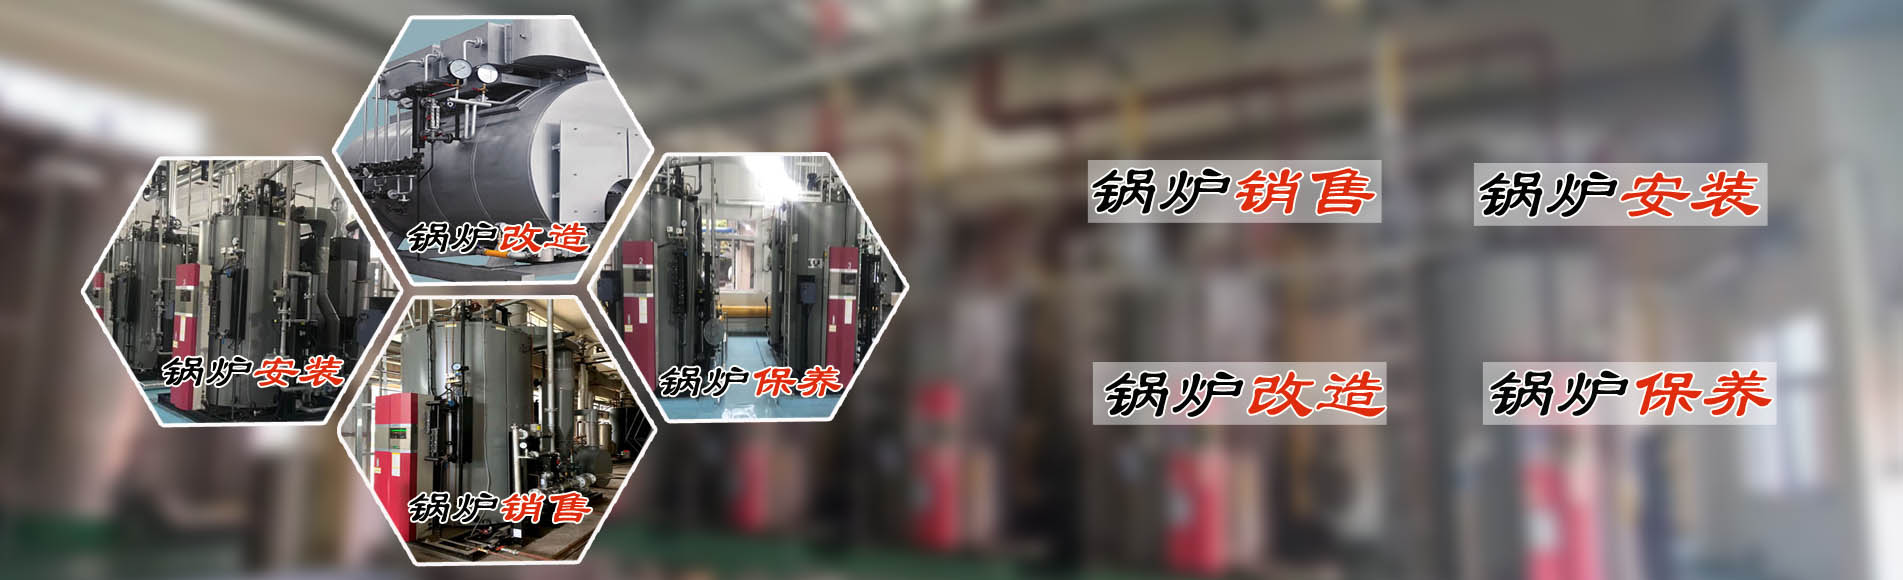 廣州希諾機電提供蒸汽節能鍋爐、熱水鍋爐安裝銷售、鍋爐改造、鍋爐維護保養服務。